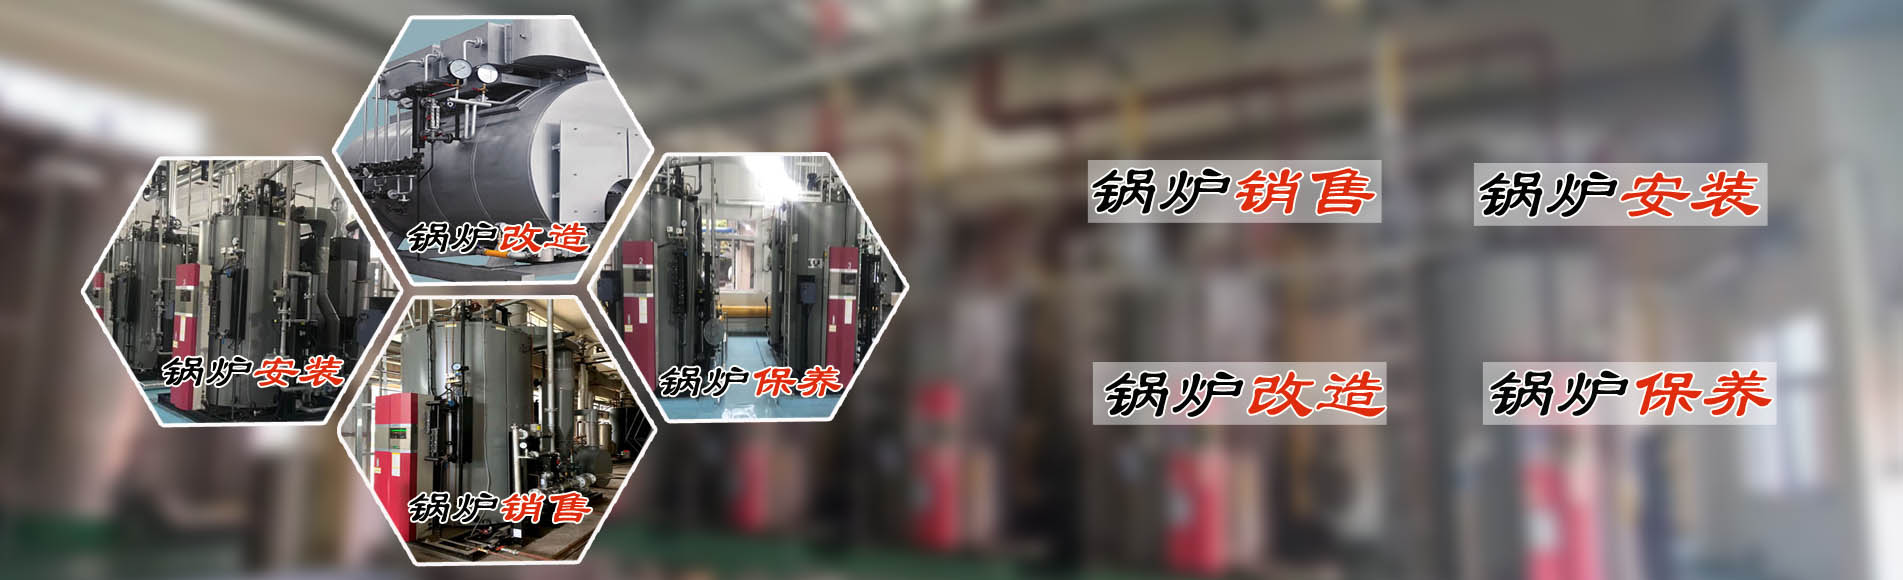 廣州希諾機電提供蒸汽節能鍋爐、熱水鍋爐安裝銷售、鍋爐改造、鍋爐維護保養服務。